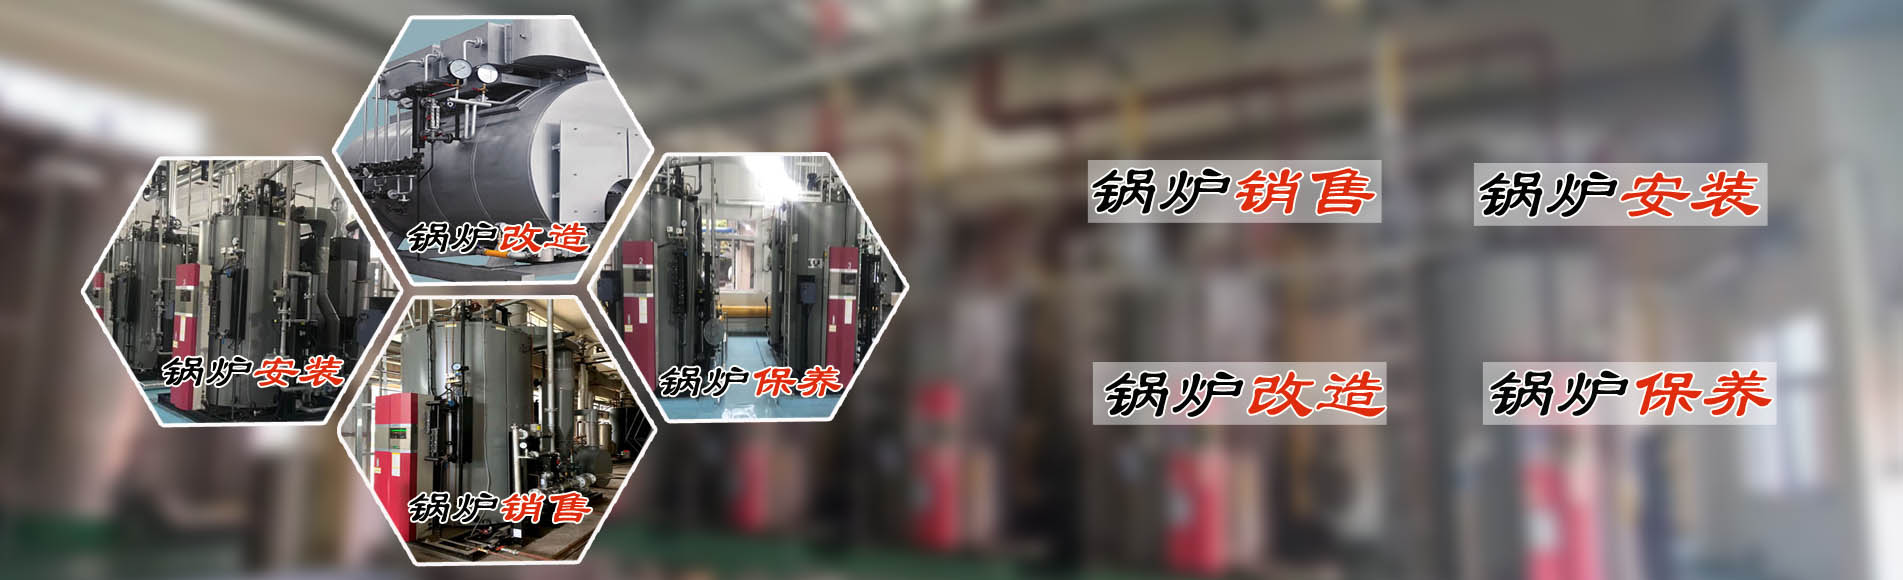 廣州希諾機電提供蒸汽節能鍋爐、熱水鍋爐安裝銷售、鍋爐改造、鍋爐維護保養服務。